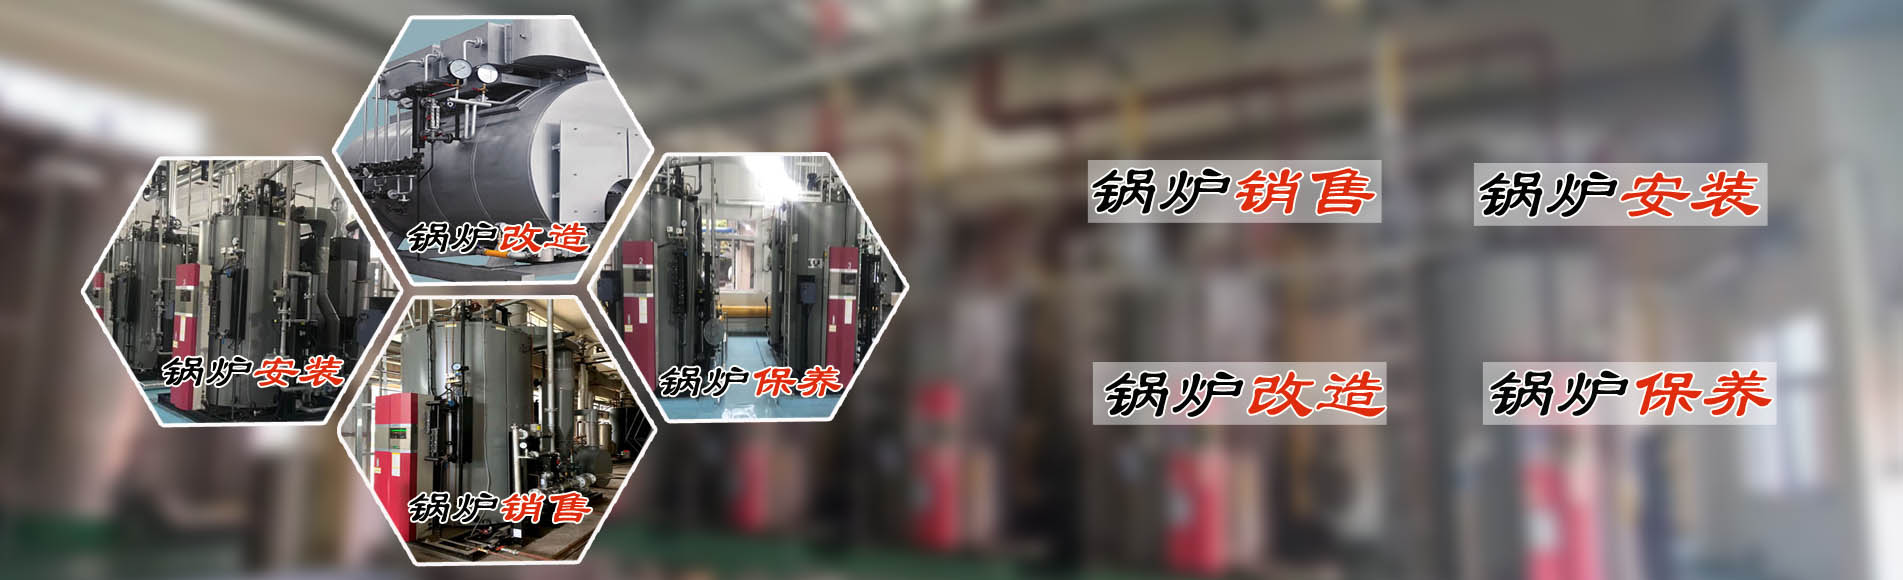 廣州希諾機電提供蒸汽節能鍋爐、熱水鍋爐安裝銷售、鍋爐改造、鍋爐維護保養服務。